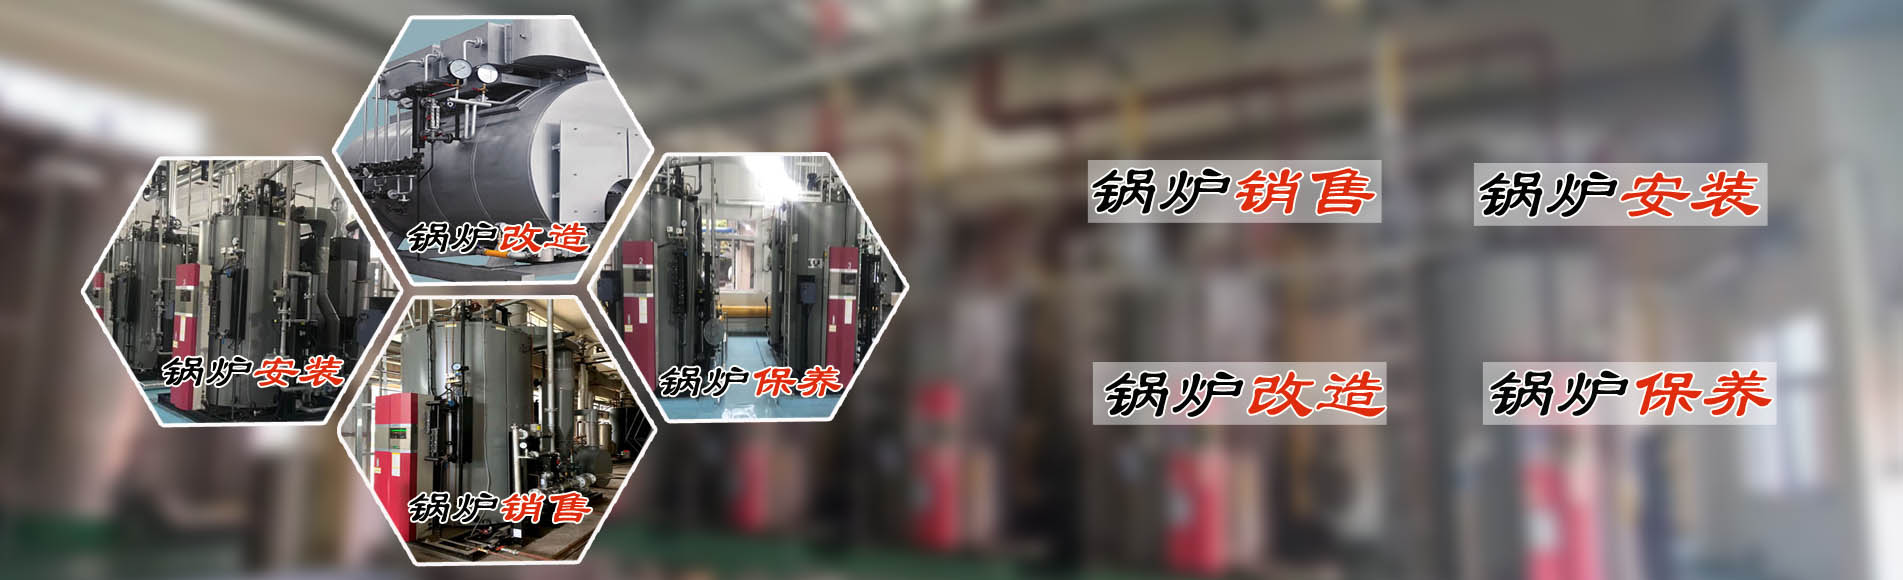 廣州希諾機電提供蒸汽節能鍋爐、熱水鍋爐安裝銷售、鍋爐改造、鍋爐維護保養服務。